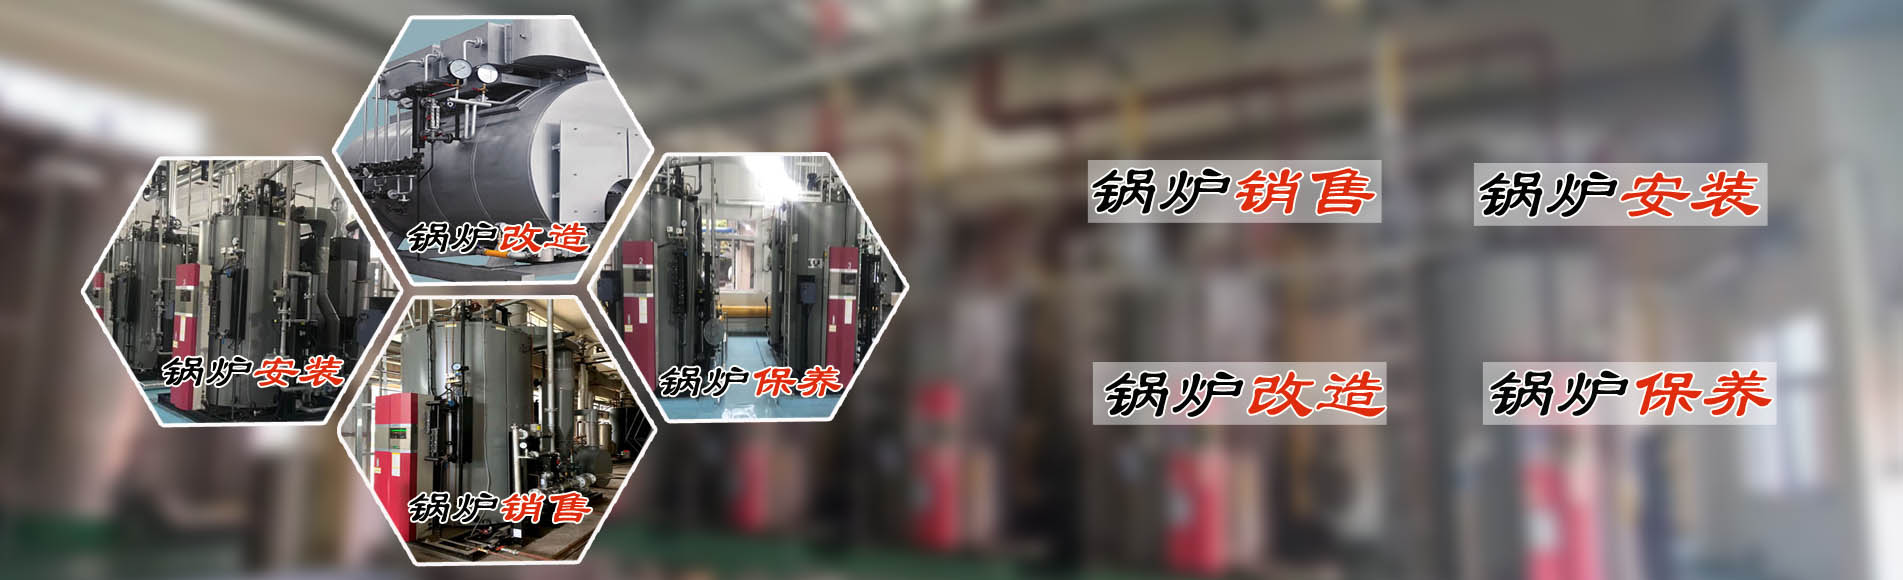 廣州希諾機電提供蒸汽節能鍋爐、熱水鍋爐安裝銷售、鍋爐改造、鍋爐維護保養服務。